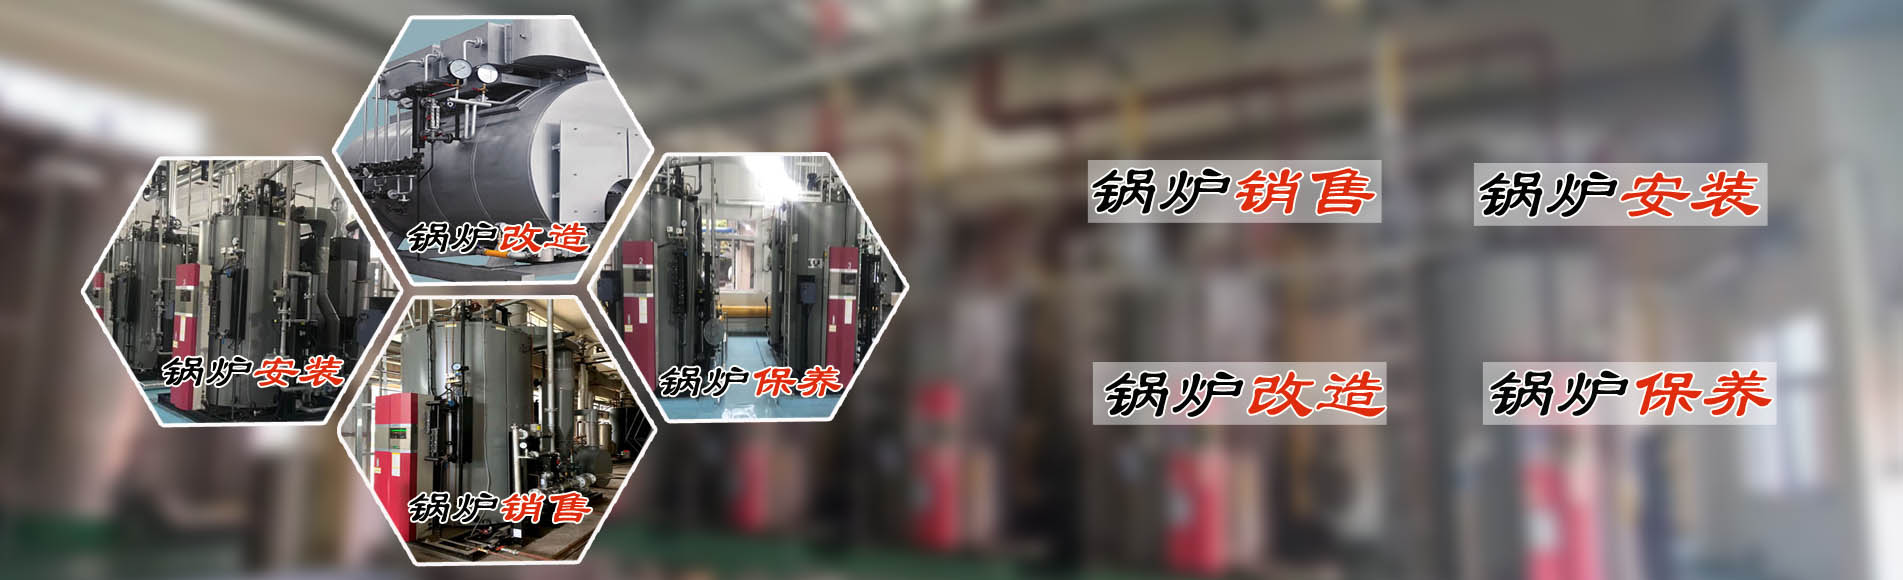 廣州希諾機電提供蒸汽節能鍋爐、熱水鍋爐安裝銷售、鍋爐改造、鍋爐維護保養服務。